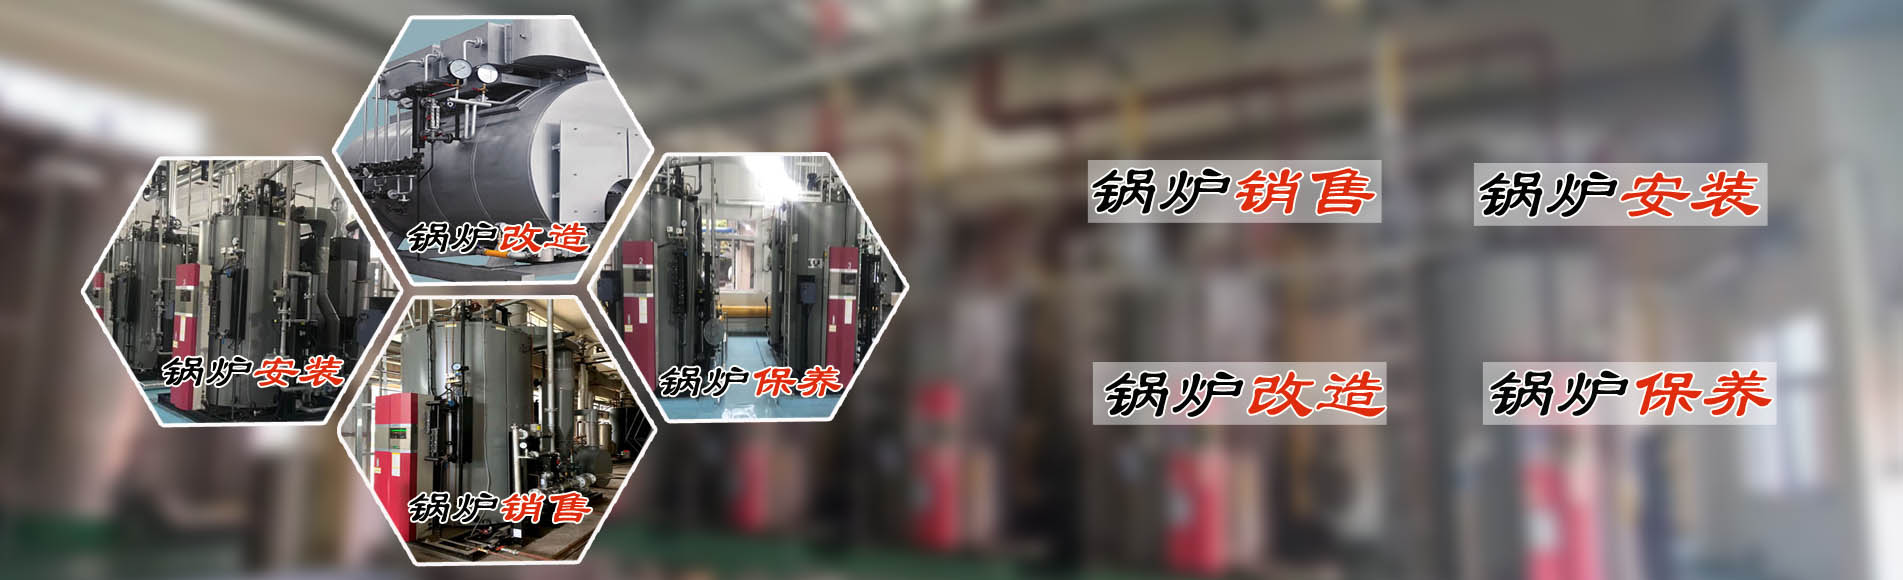 廣州希諾機電提供蒸汽節能鍋爐、熱水鍋爐安裝銷售、鍋爐改造、鍋爐維護保養服務。